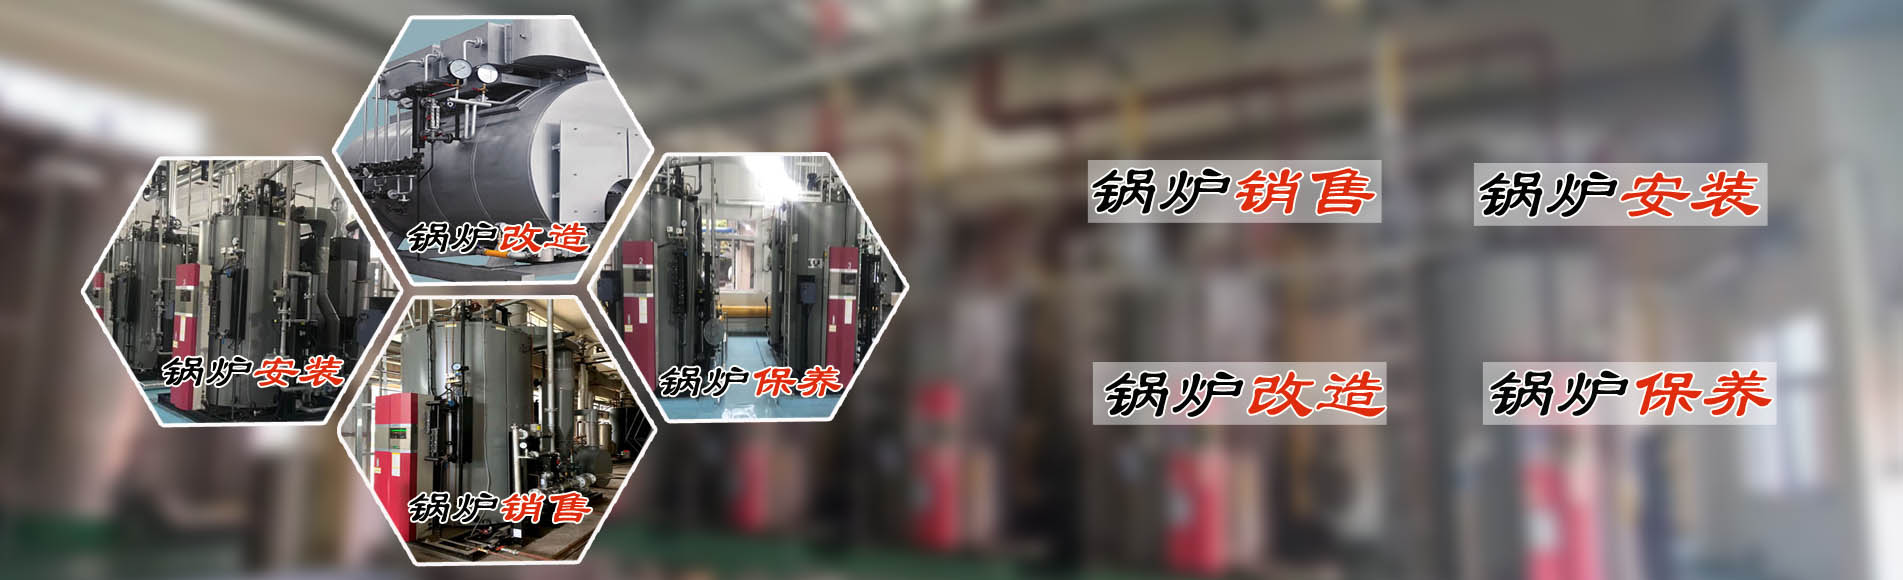 廣州希諾機電提供蒸汽節能鍋爐、熱水鍋爐安裝銷售、鍋爐改造、鍋爐維護保養服務。